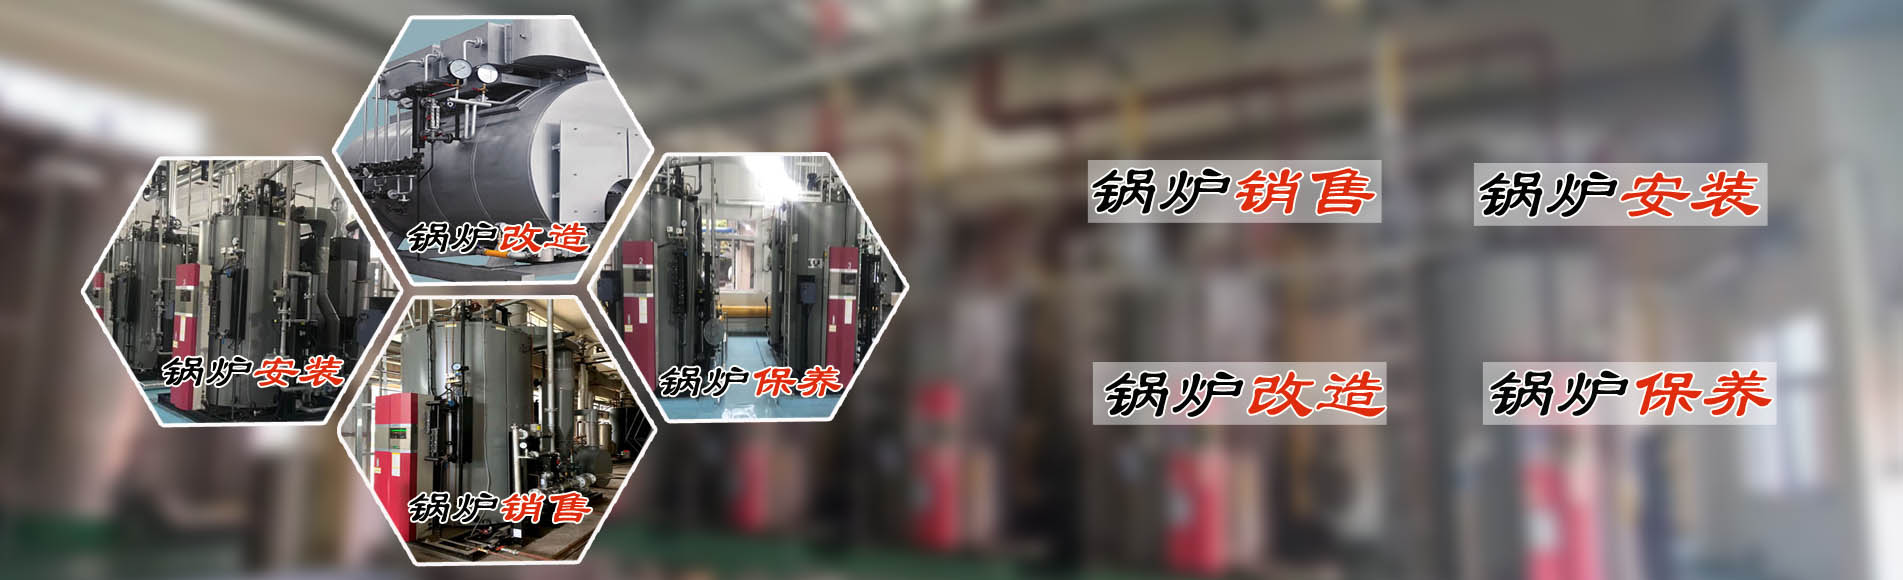 廣州希諾機電提供蒸汽節能鍋爐、熱水鍋爐安裝銷售、鍋爐改造、鍋爐維護保養服務。